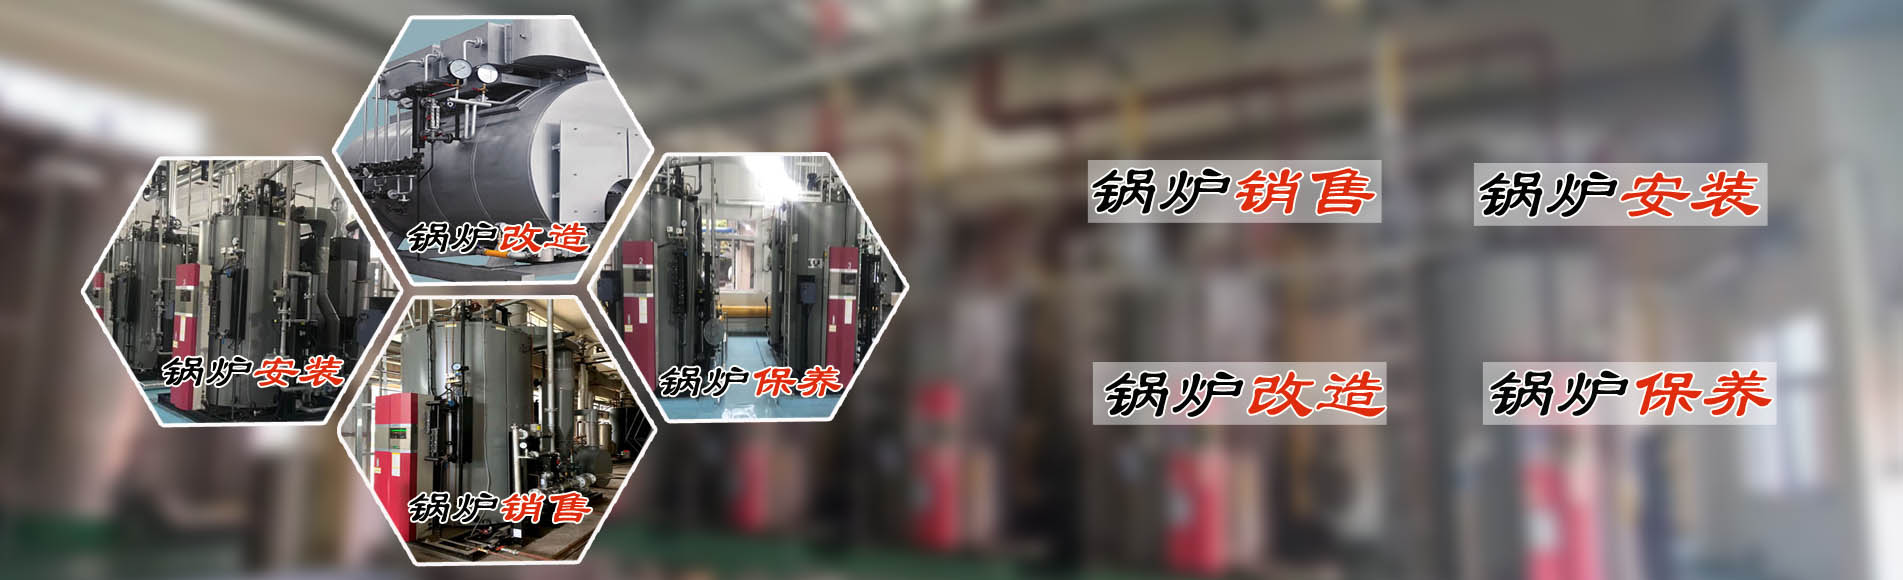 廣州希諾機電提供蒸汽節能鍋爐、熱水鍋爐安裝銷售、鍋爐改造、鍋爐維護保養服務。